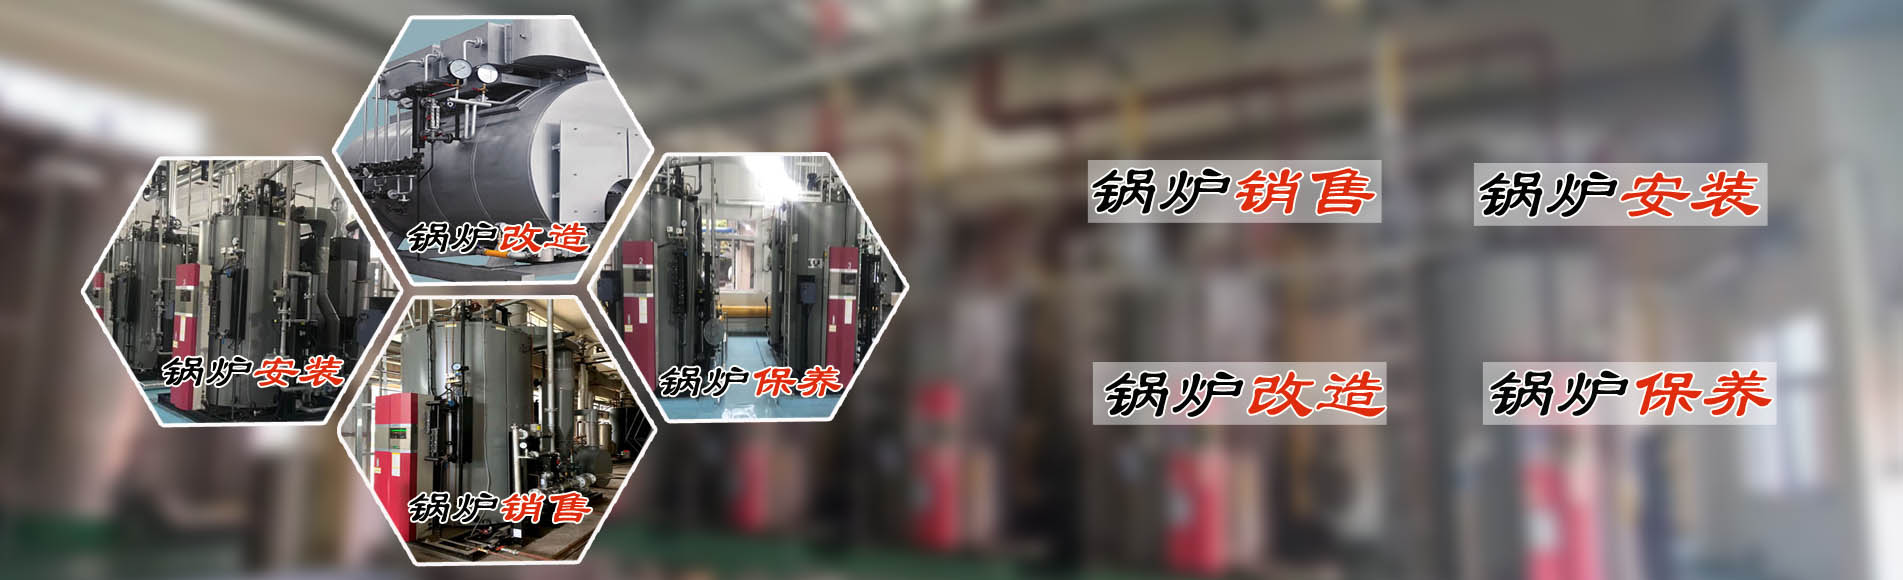 廣州希諾機電提供蒸汽節能鍋爐、熱水鍋爐安裝銷售、鍋爐改造、鍋爐維護保養服務。